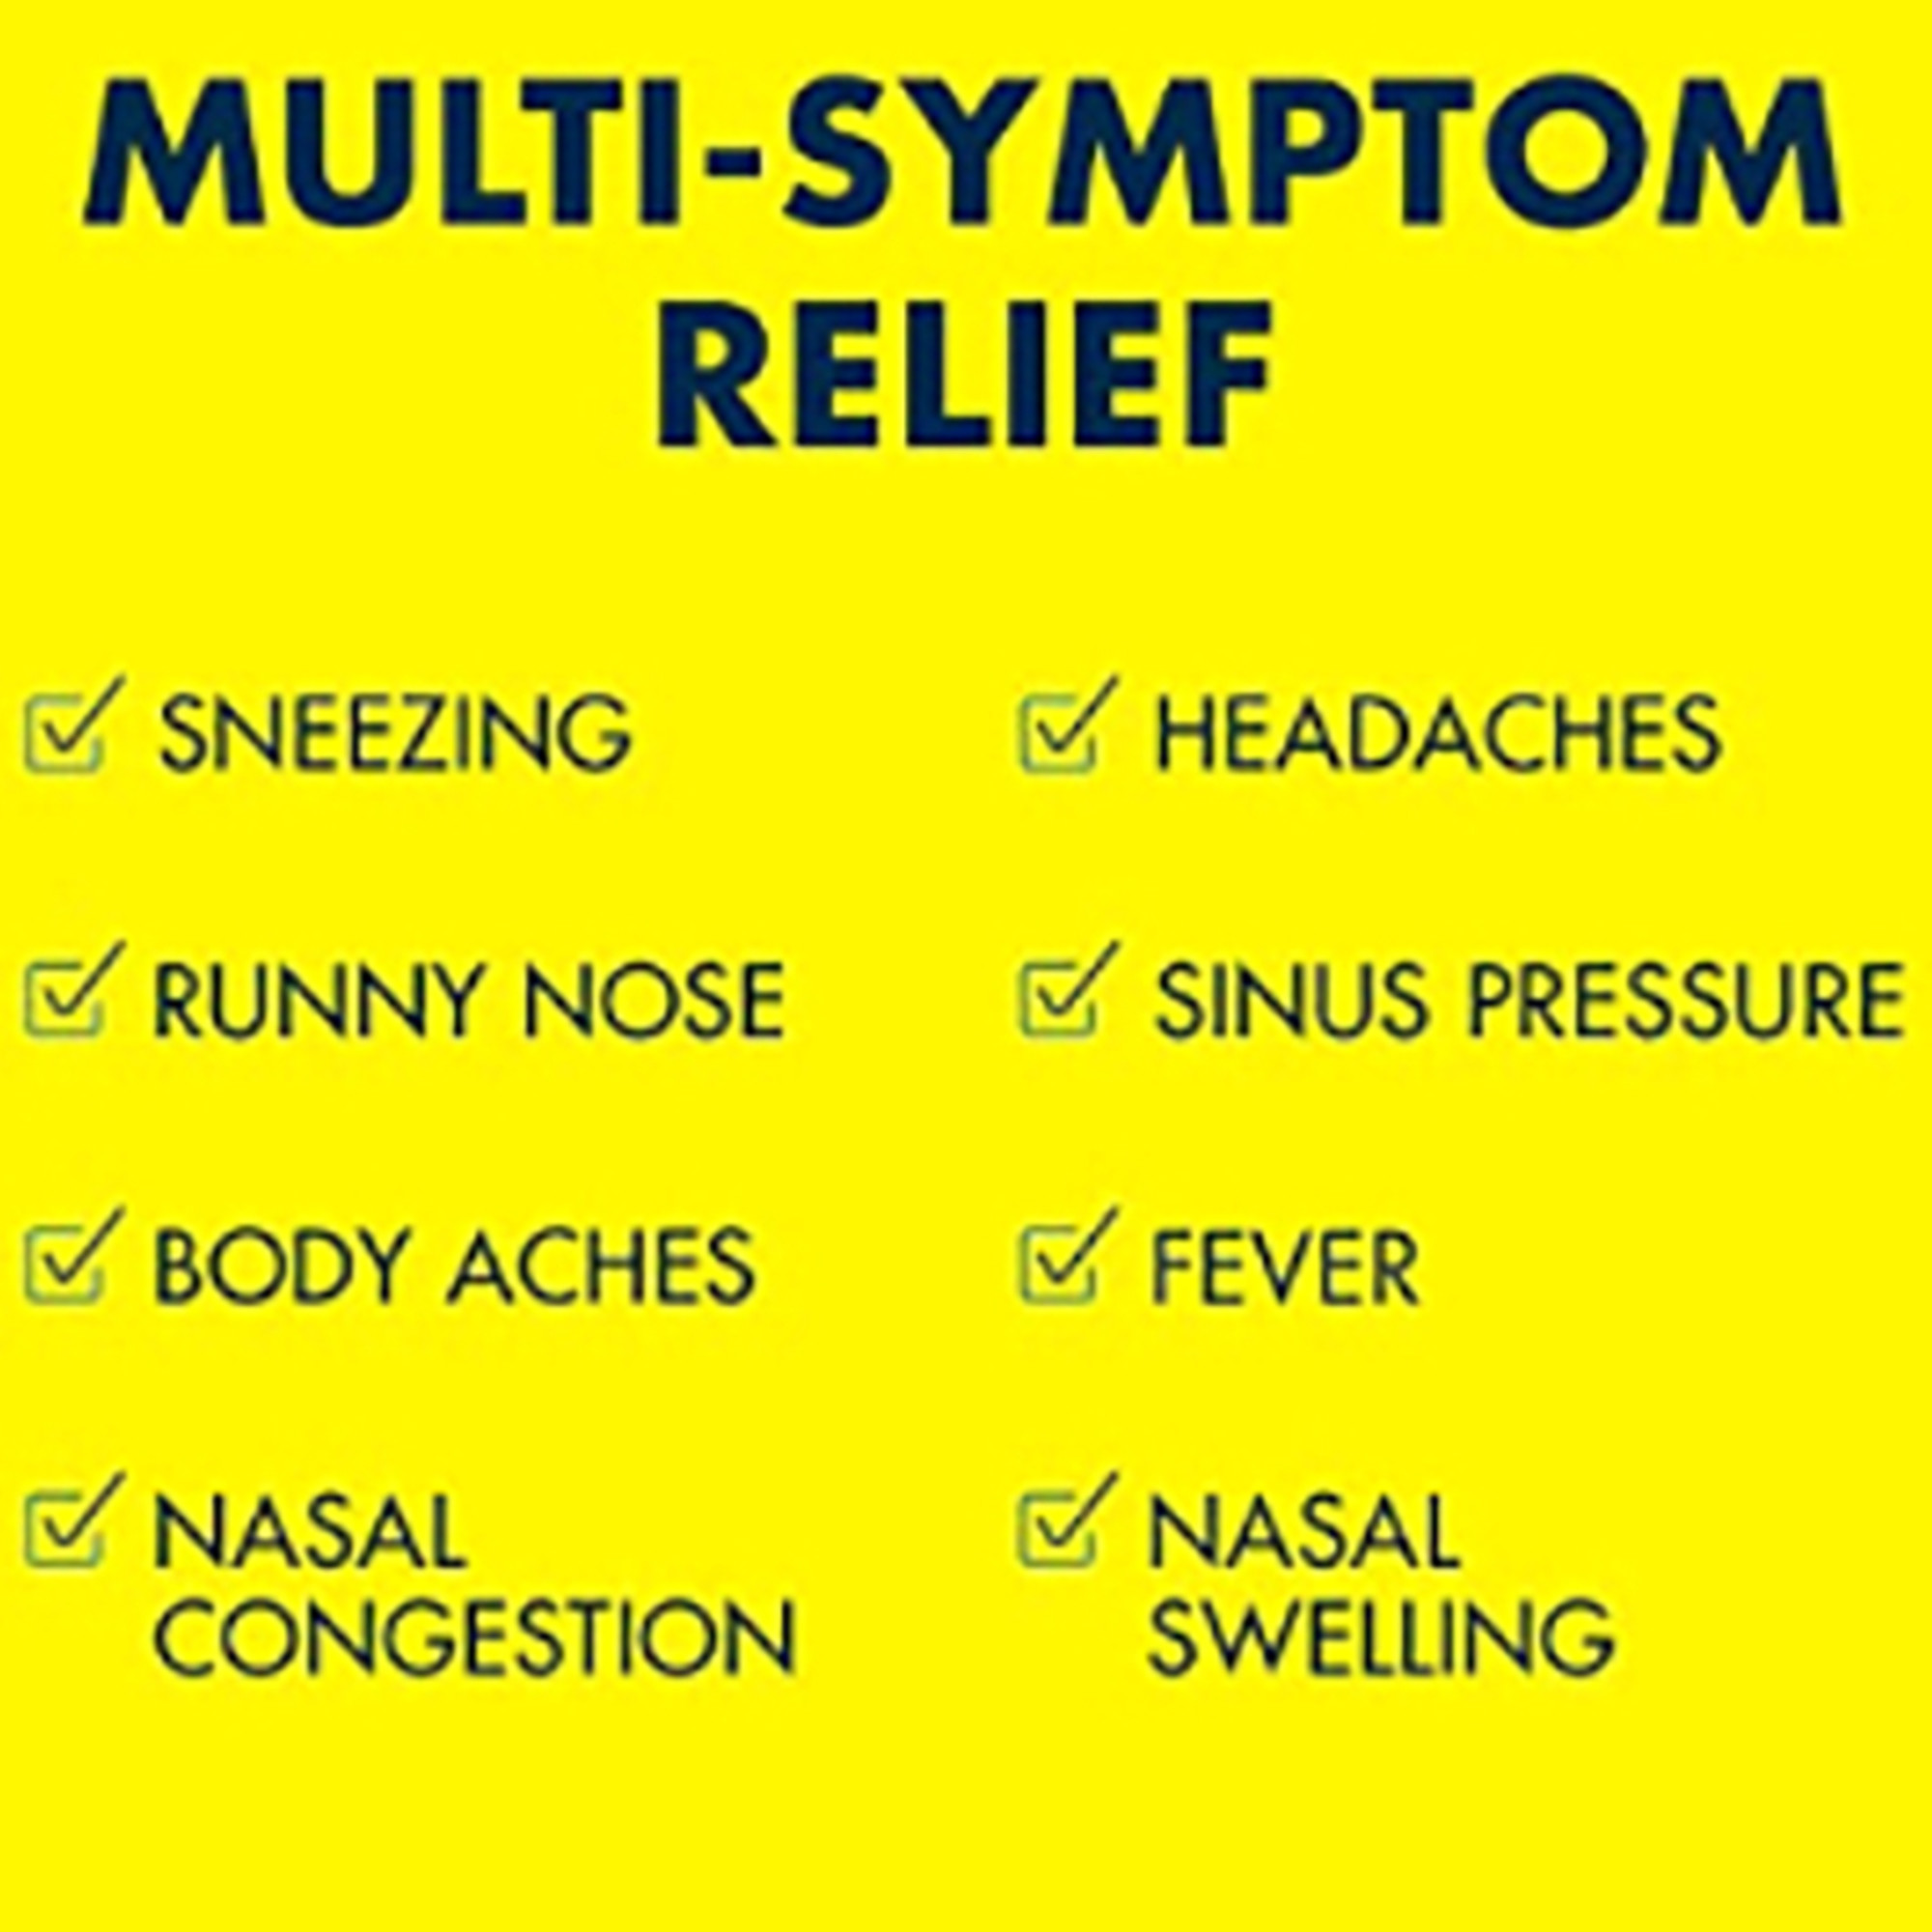 Advil Multi-Symptom Cold and Flu Medicine Fever Reducer Coated Tablets, 20 Count - image 3 of 11